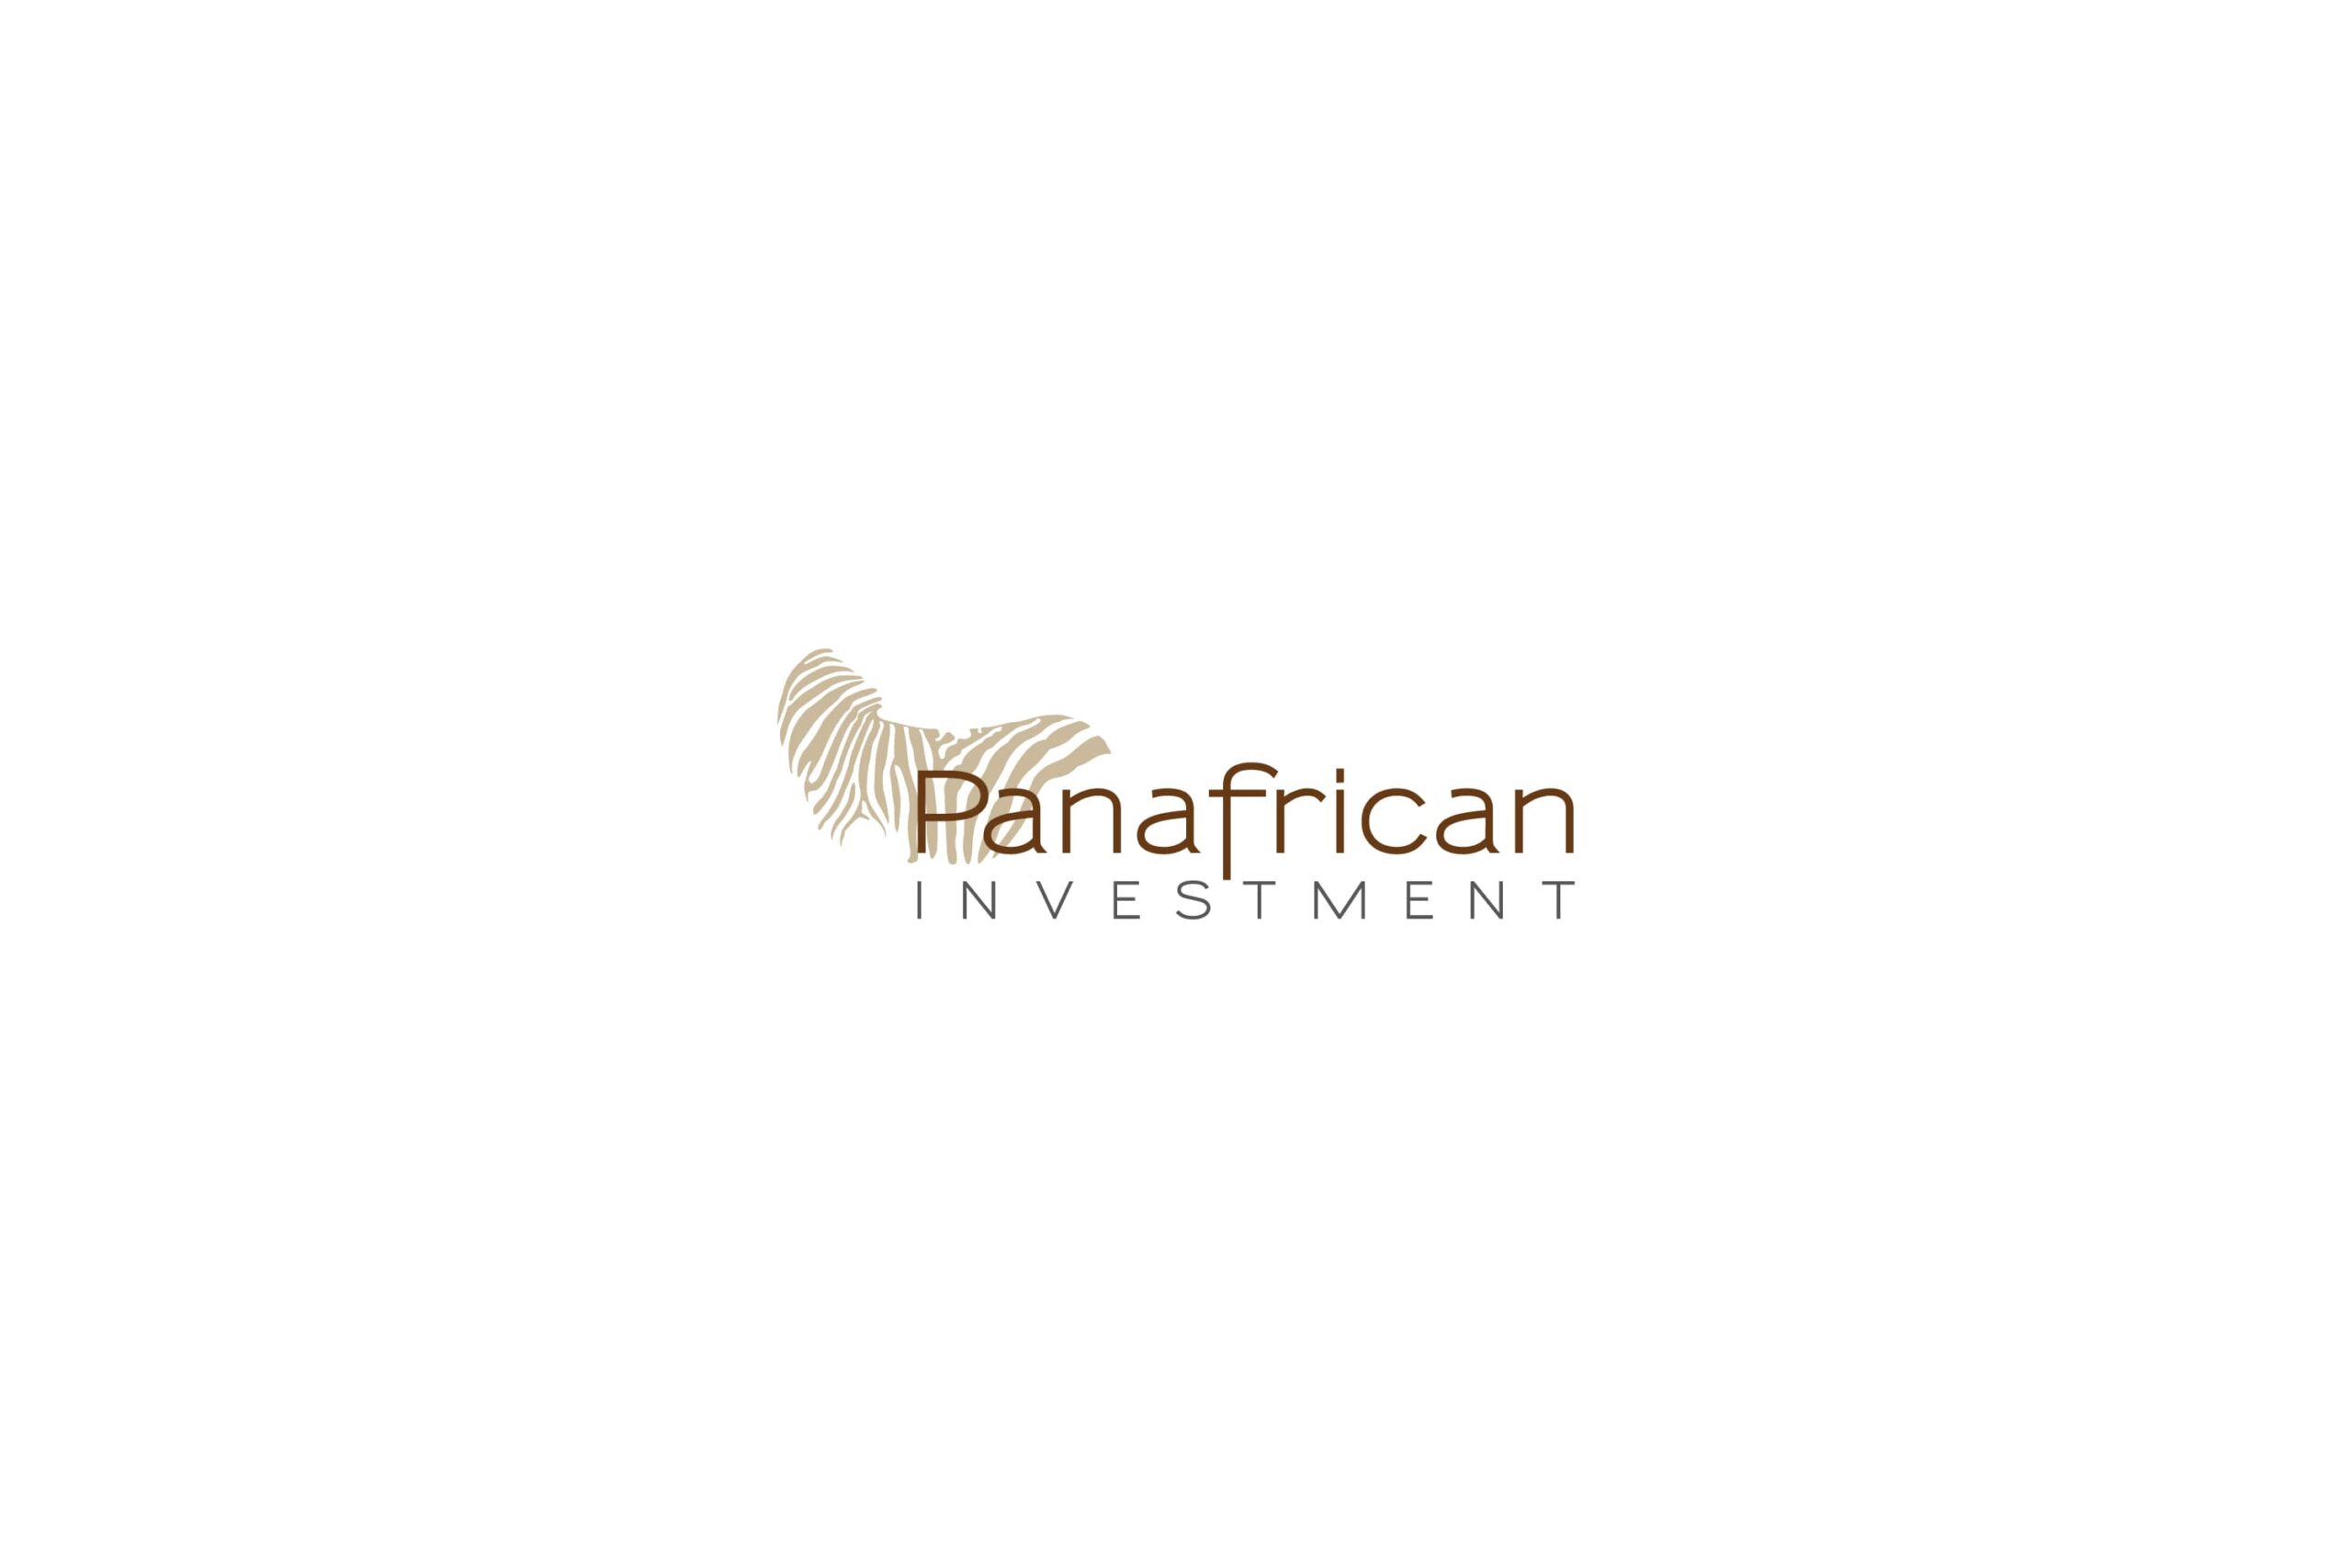 Logotipo Panafrican marrón sobre fondo blanco branding por The Acctitude diseño web